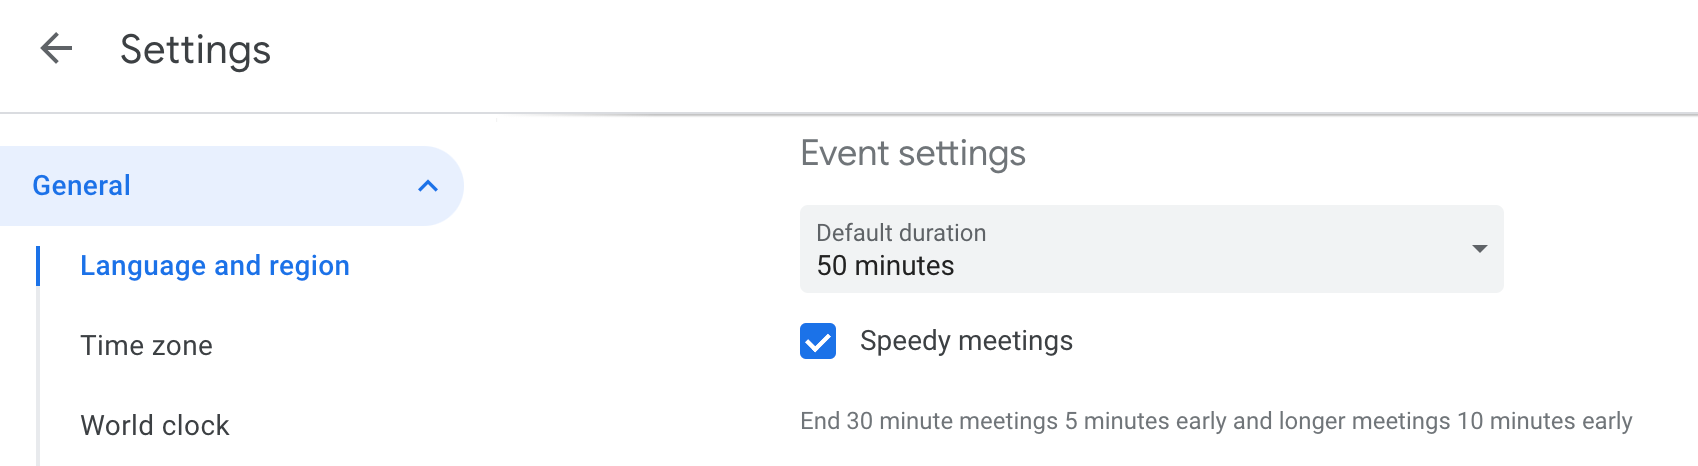 Speedy meetings setting in Google calendar shortens meetings by 10 or 5 minutes